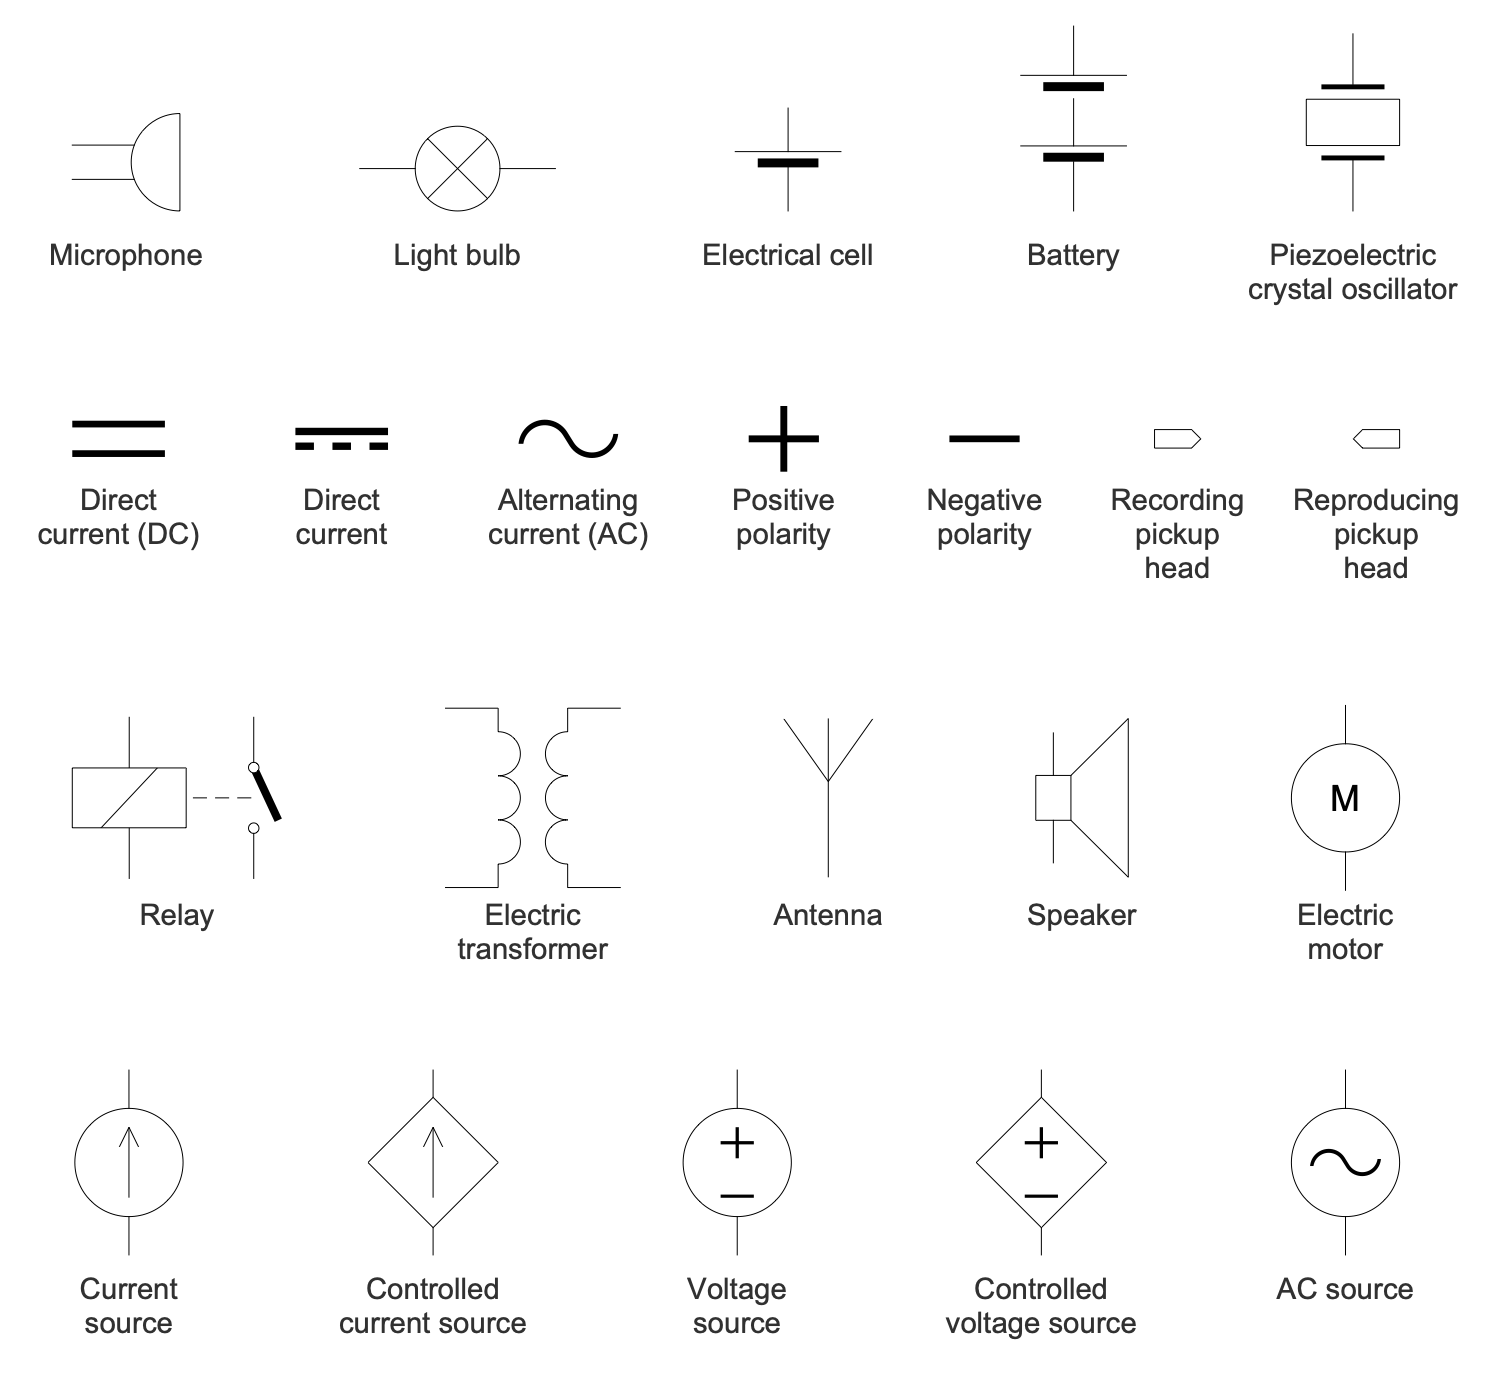 basic electronic symbols